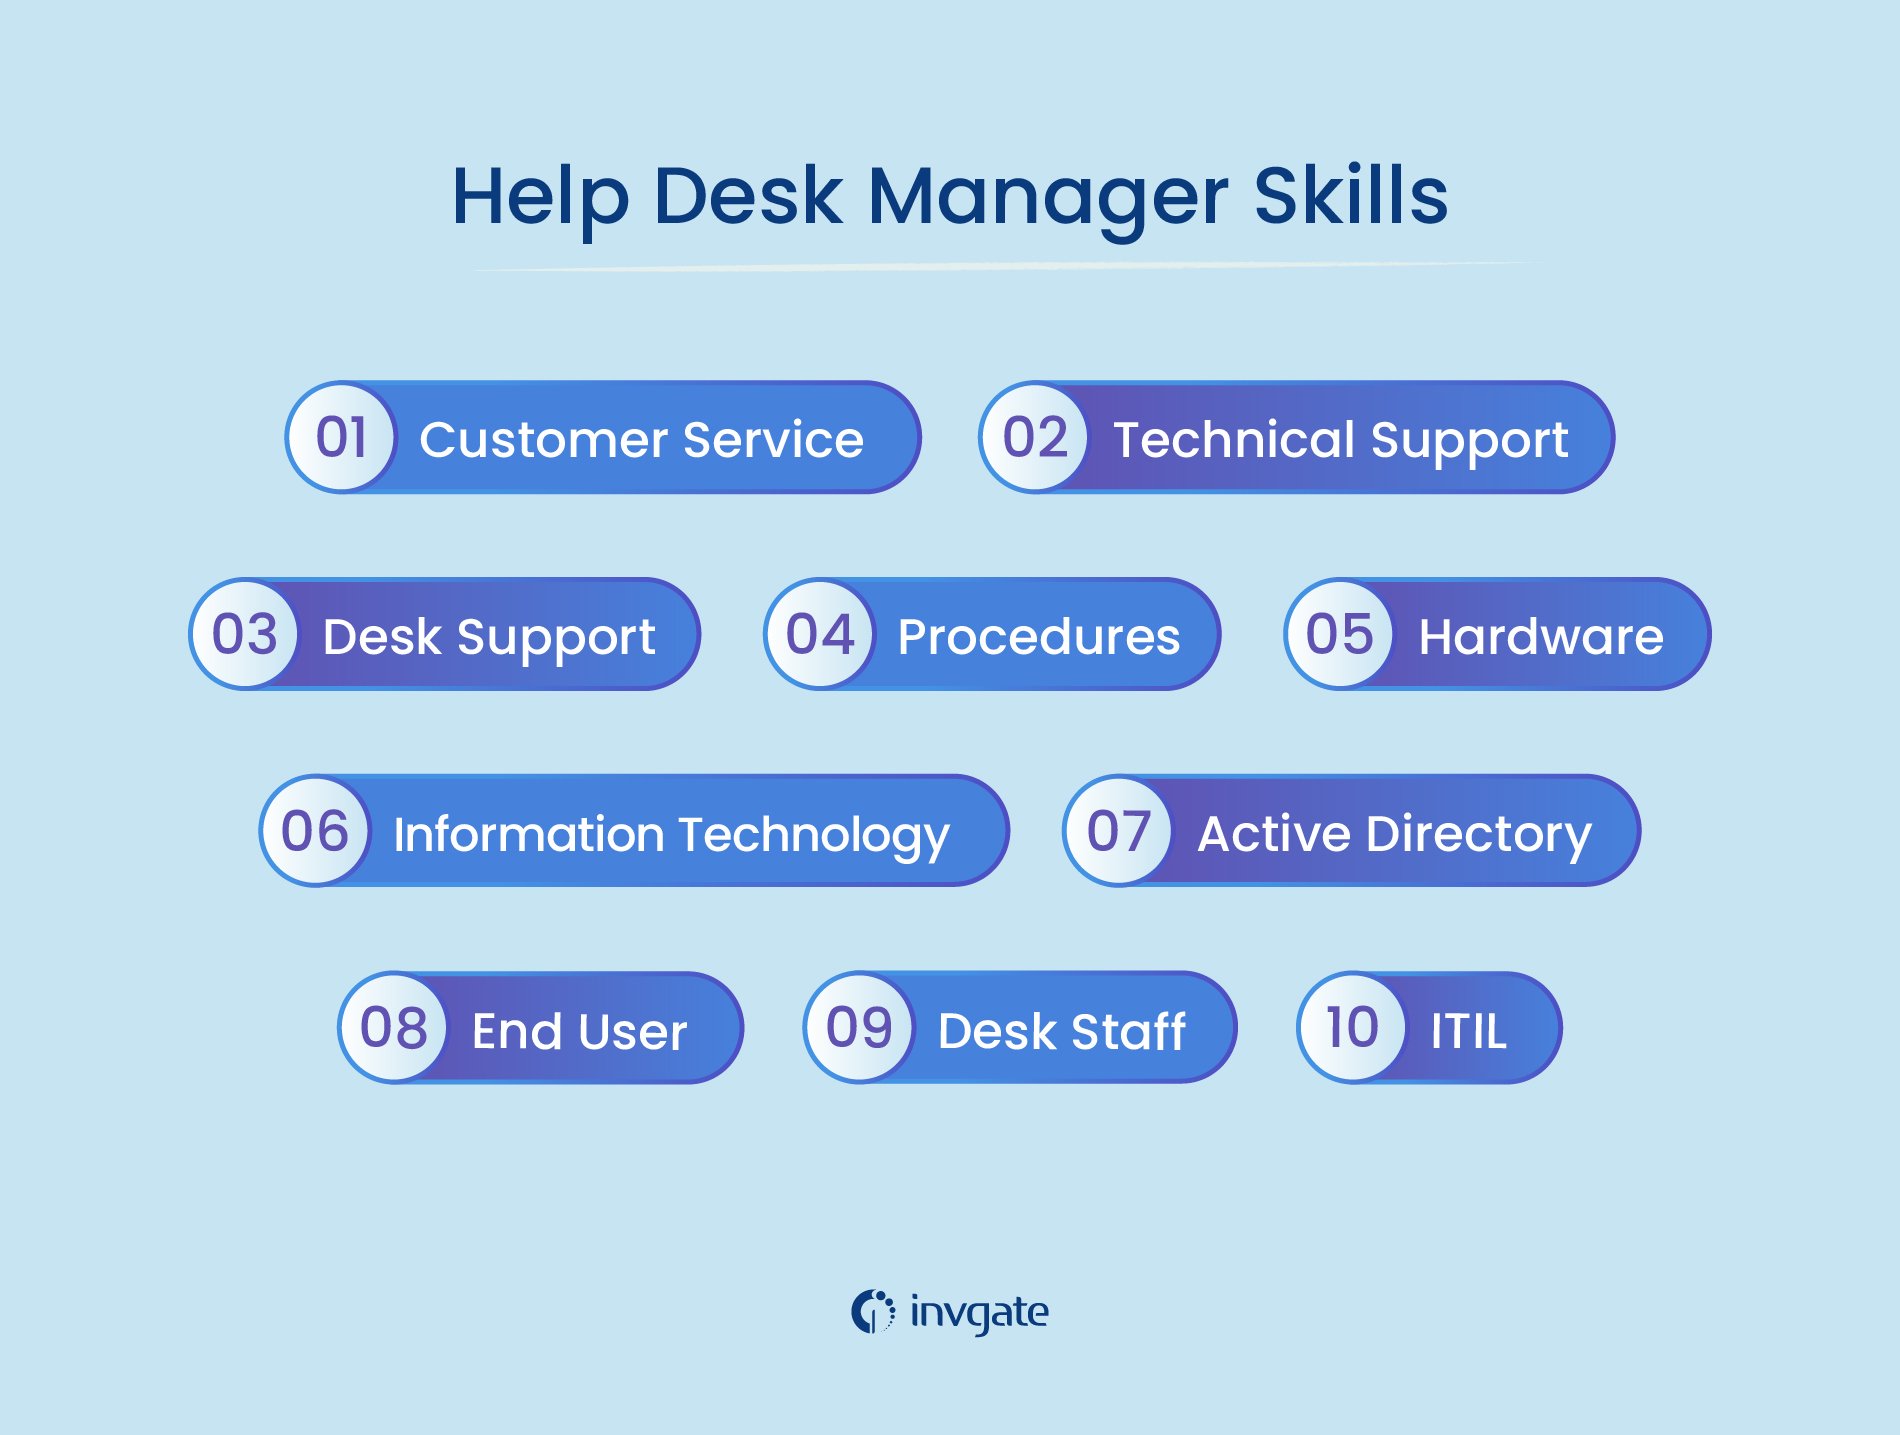 Help desk manager skills